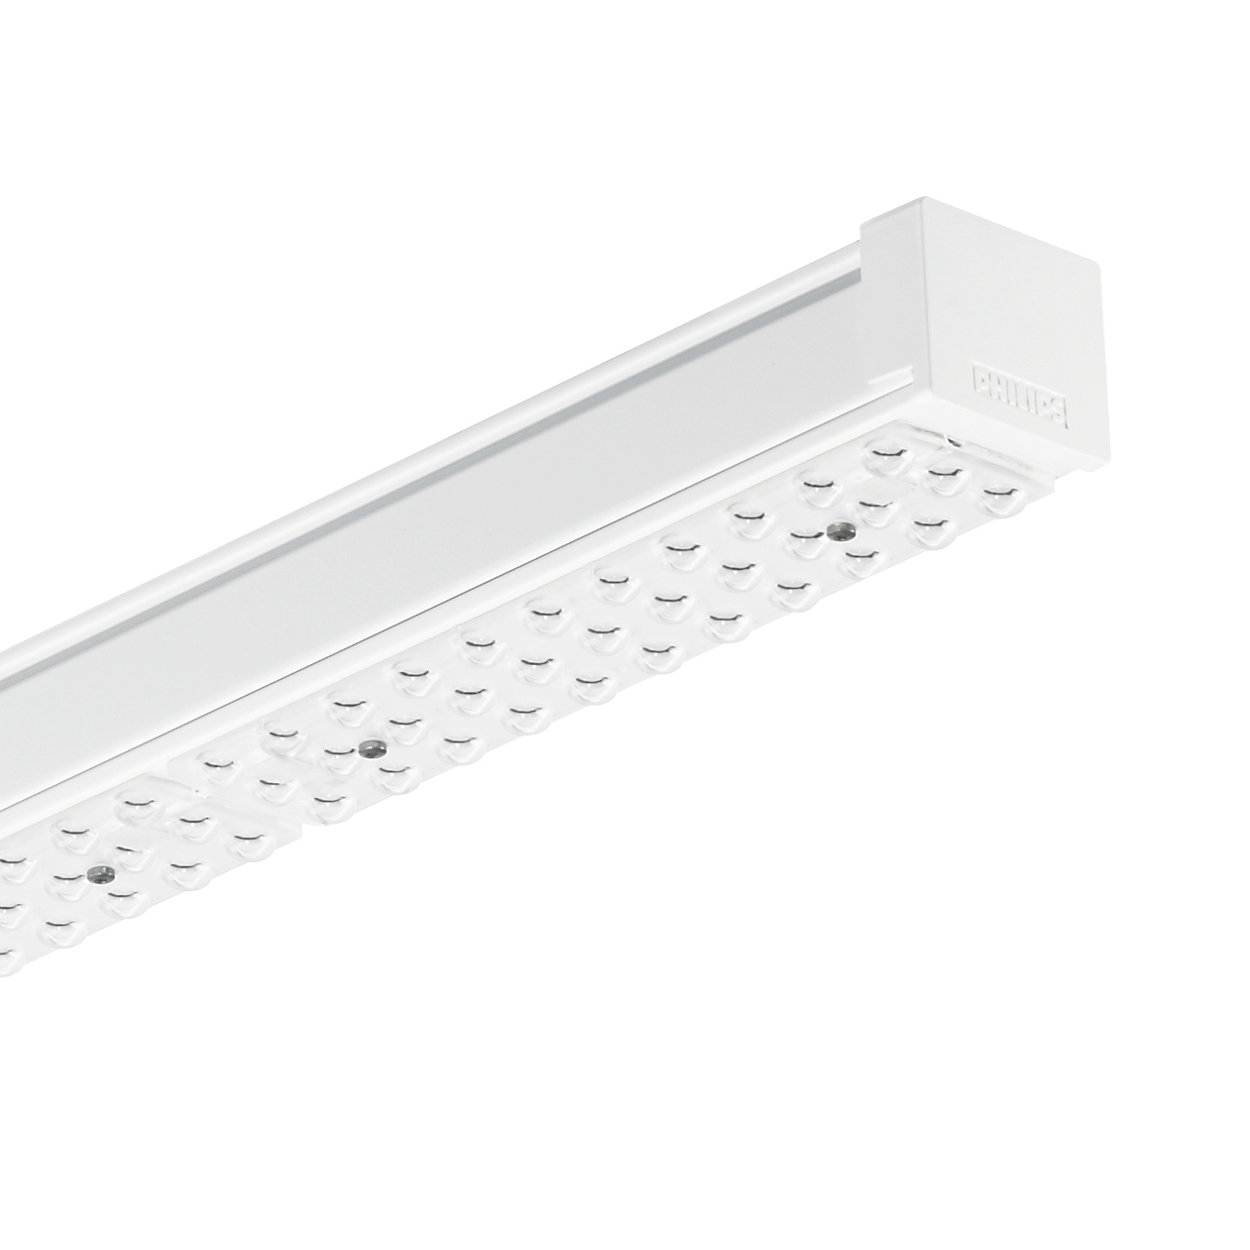 Wkładki Maxos LED dla linii świetlnych TTX400 — najwyższa sprawność i szybki zwrot z inwestycji